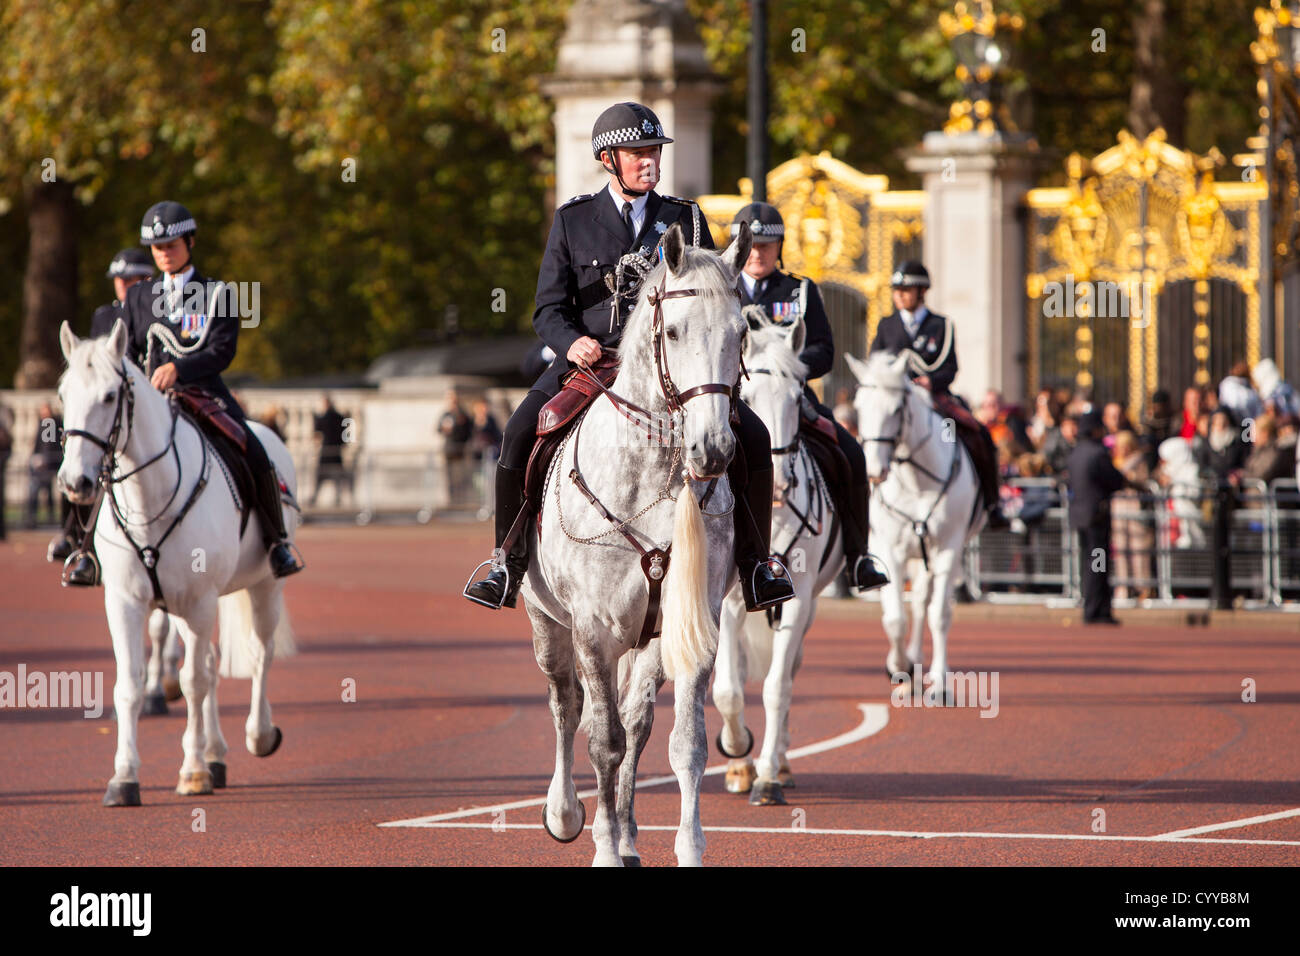 Detalle de la policía montada en el Palacio de Buckingham, Londres, Inglaterra, Reino Unido. Foto de stock